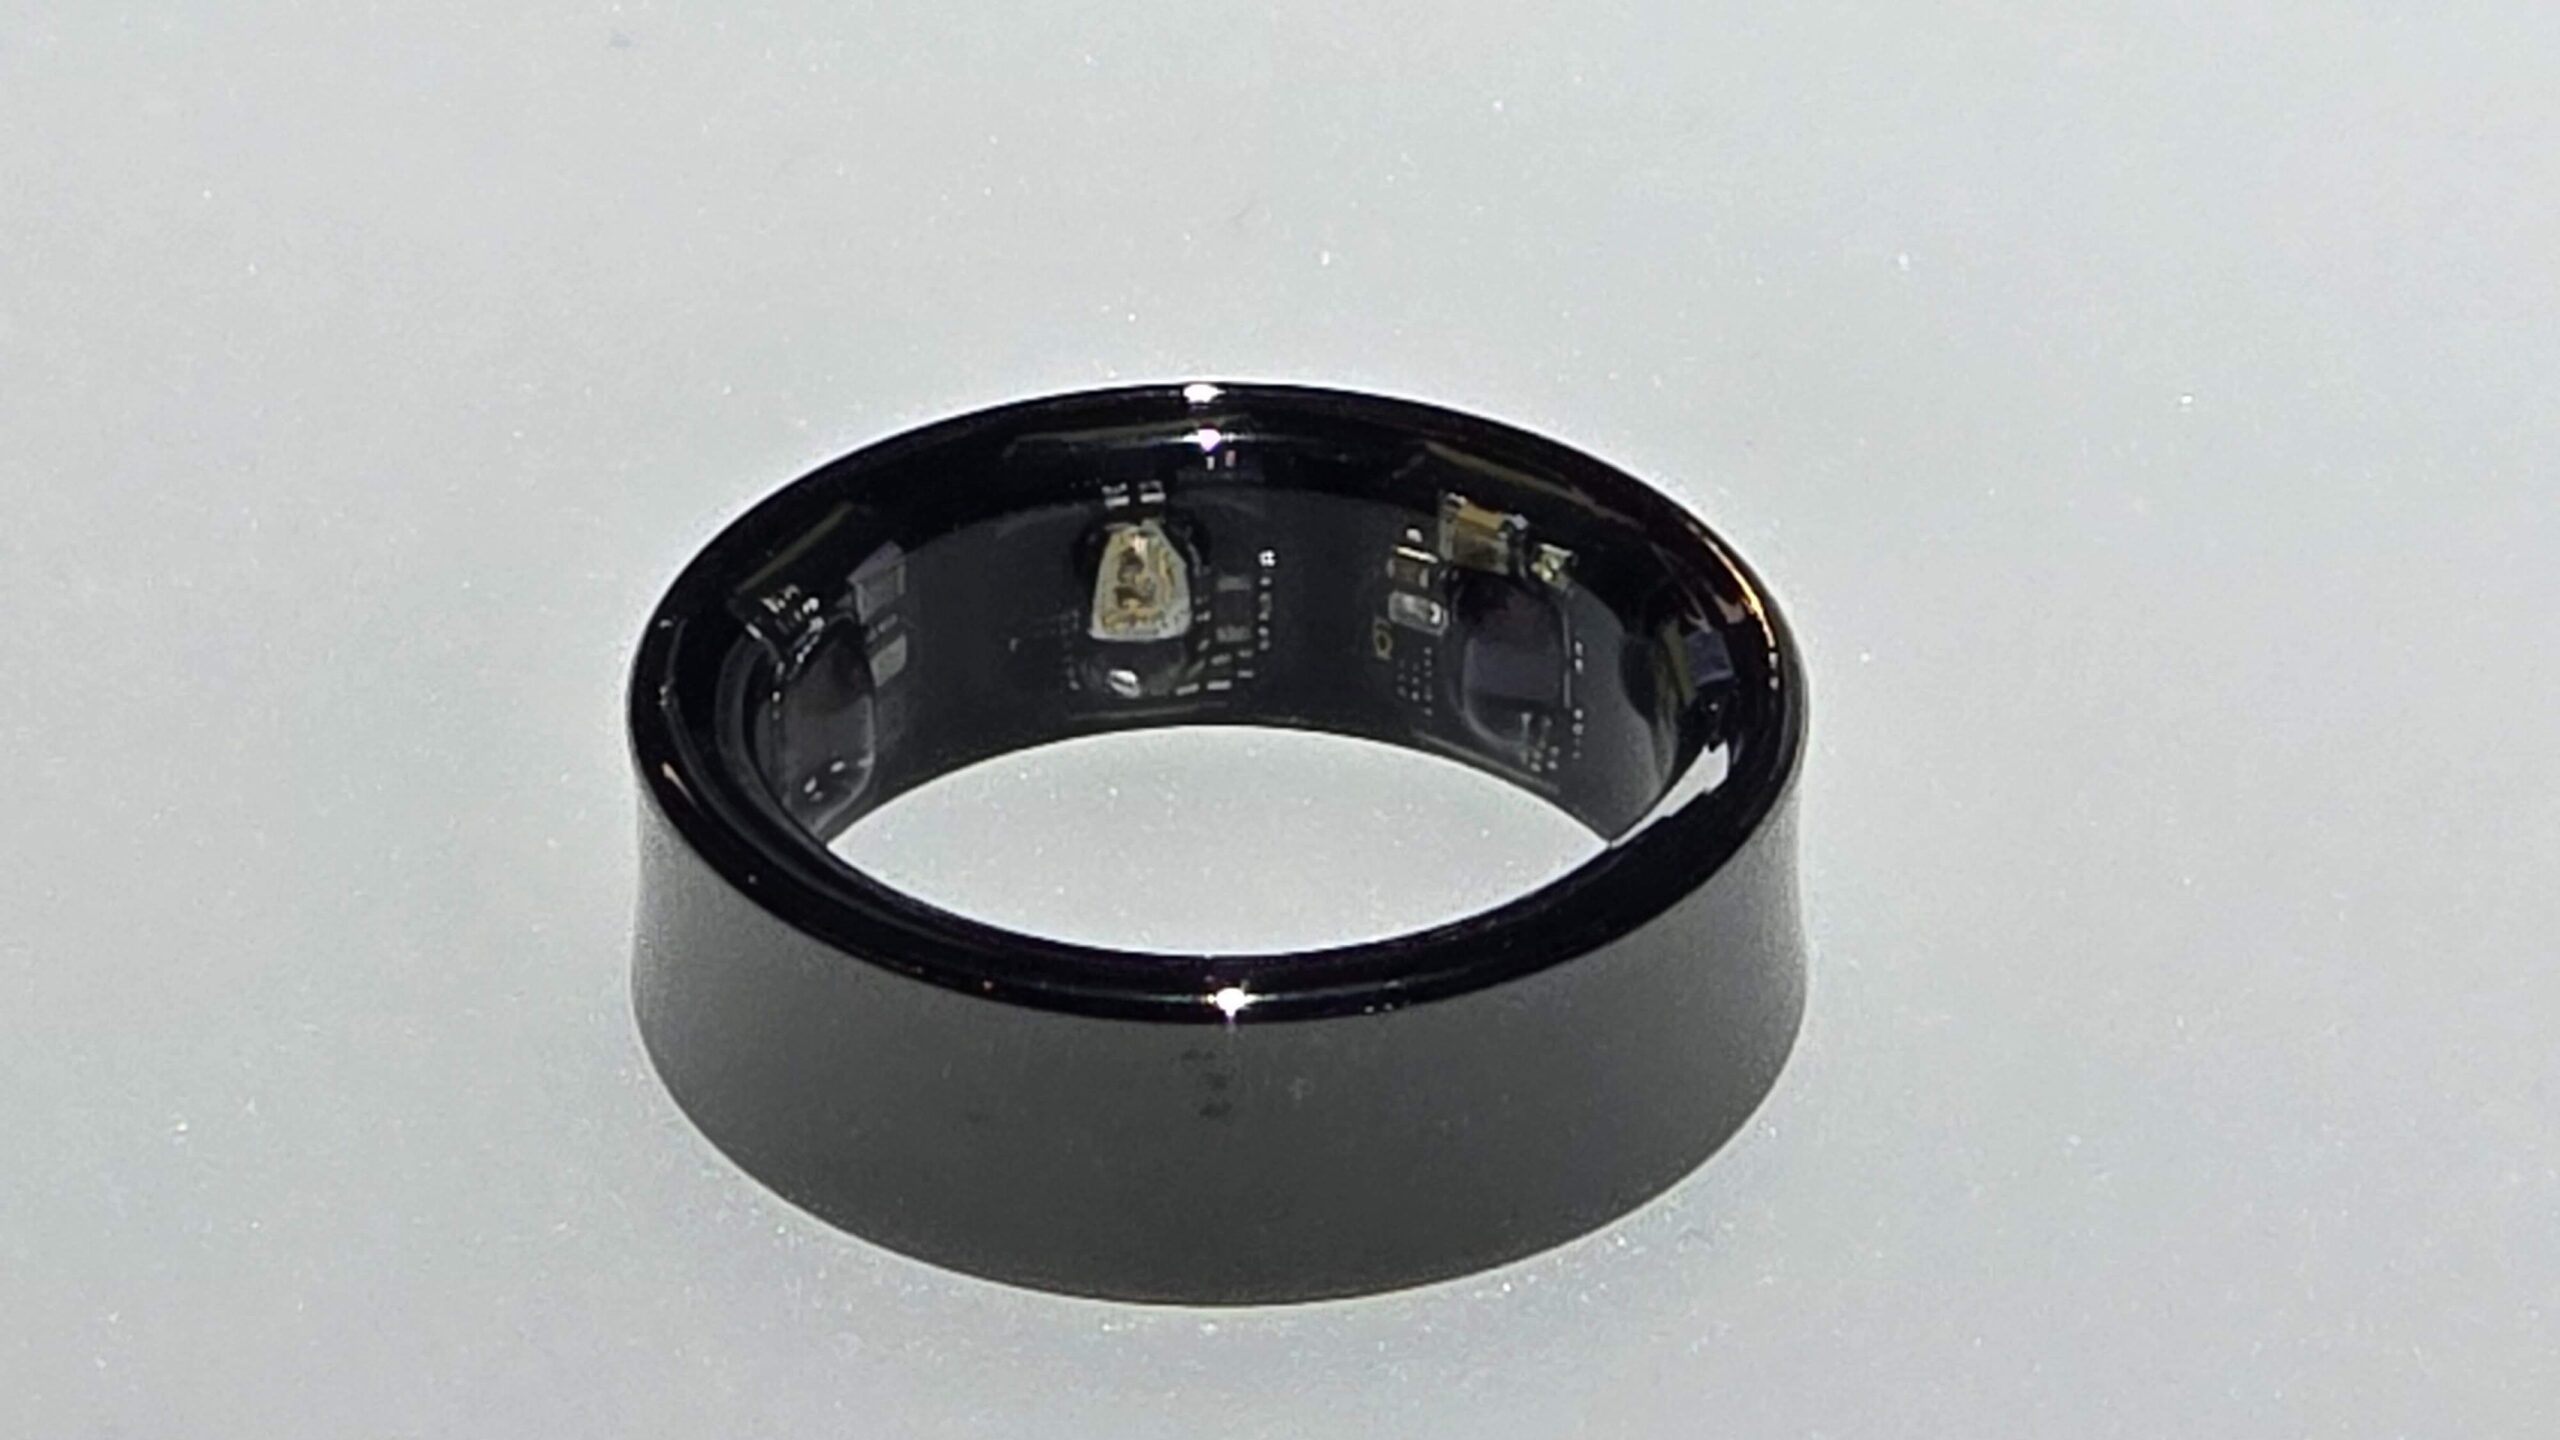 Czarny Samsung Galaxy Ring z widocznymi elementami elektronicznymi wewnątrz, położona na jasnej powierzchni.